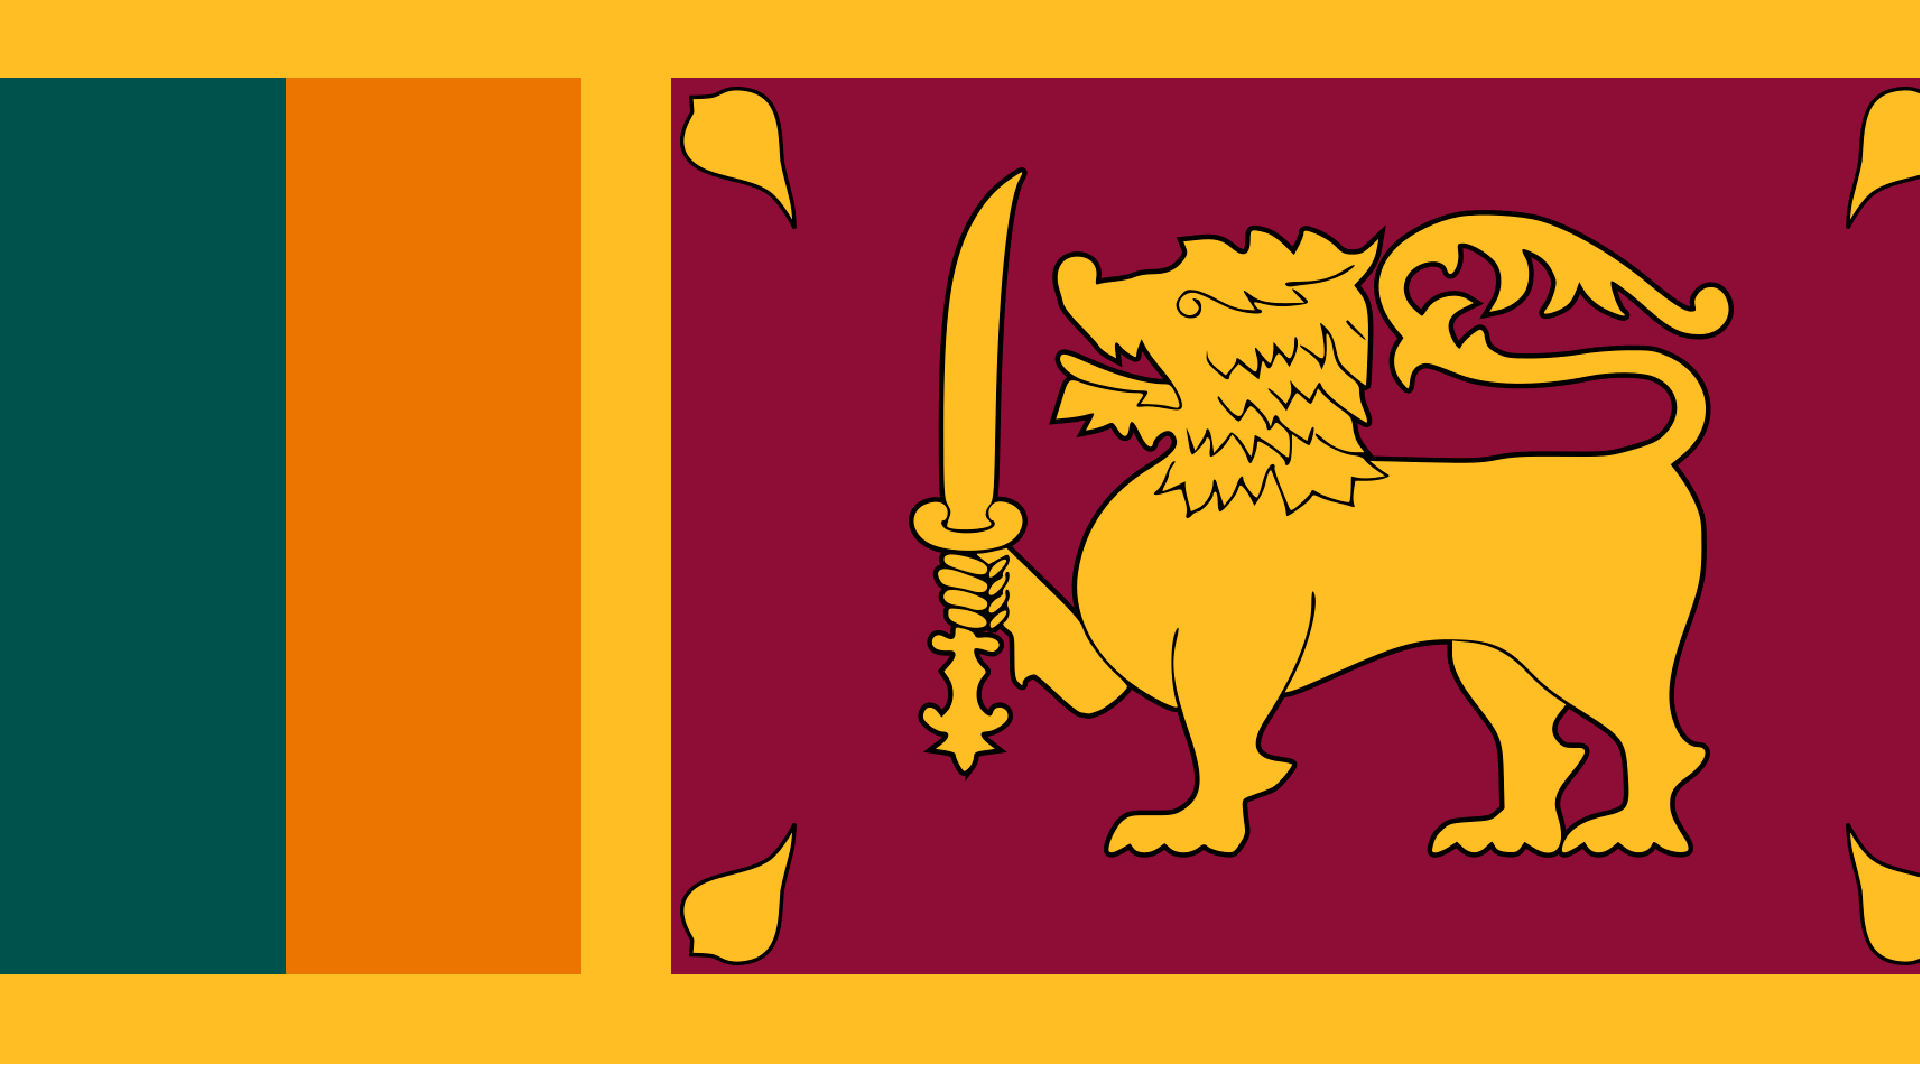 An image of the flag of Sri Lanka